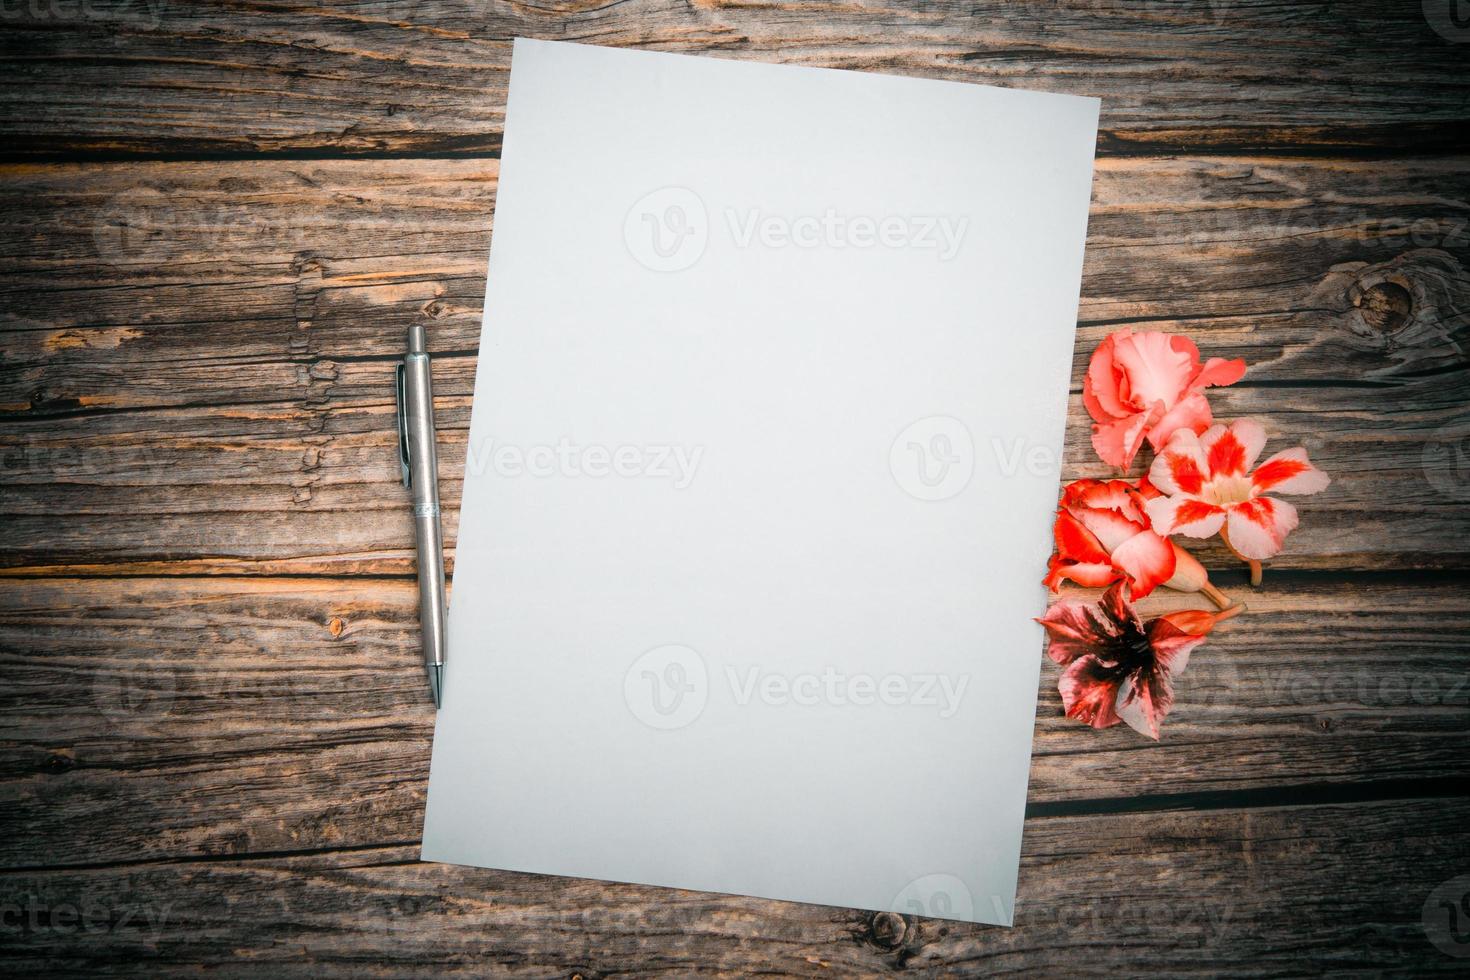 flores de azalea rosa con lápiz de color plateado y hoja de papel en blanco sobre un fondo de madera, vista superior, plantilla en blanco para el texto. endecha plana foto